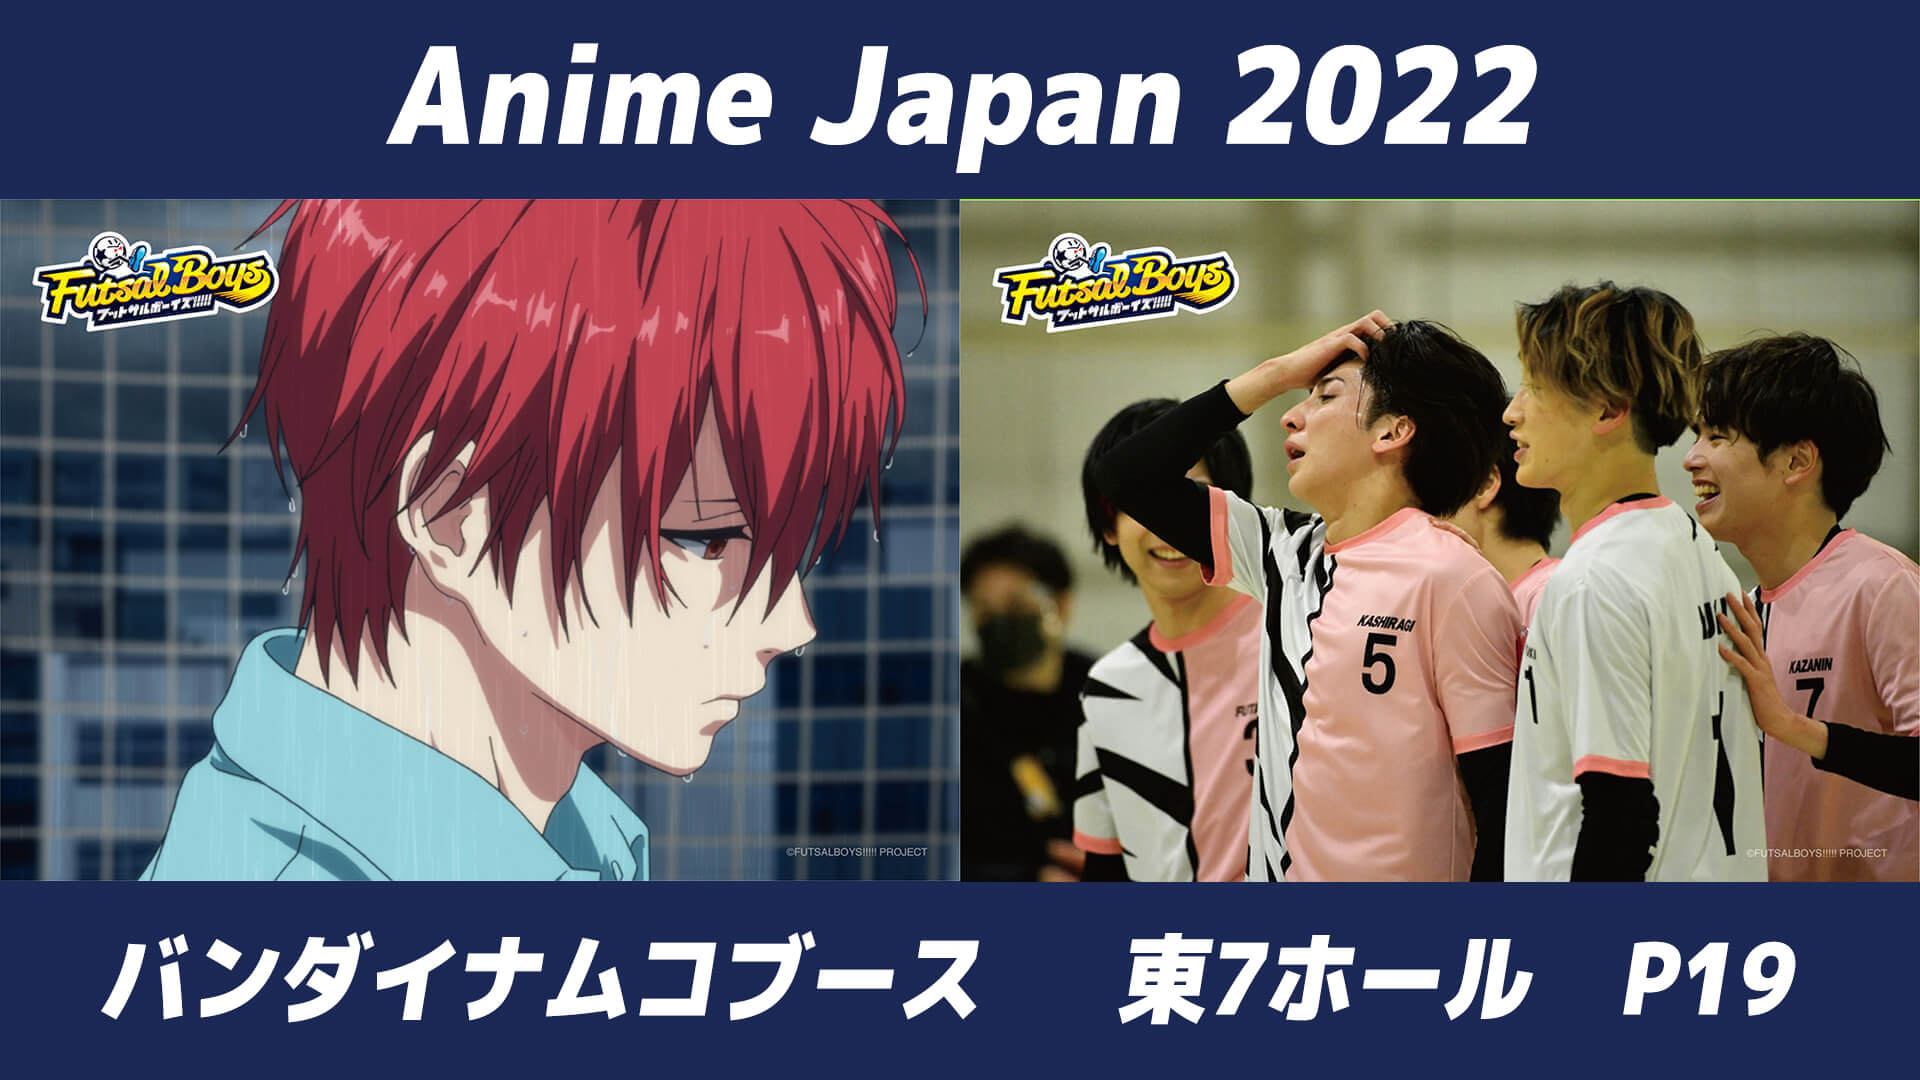 【展開内容決定！】推しを剥がして持ち帰ろう！AnimeJapan 2022にて剥がせるブロマイドの展示が決定！